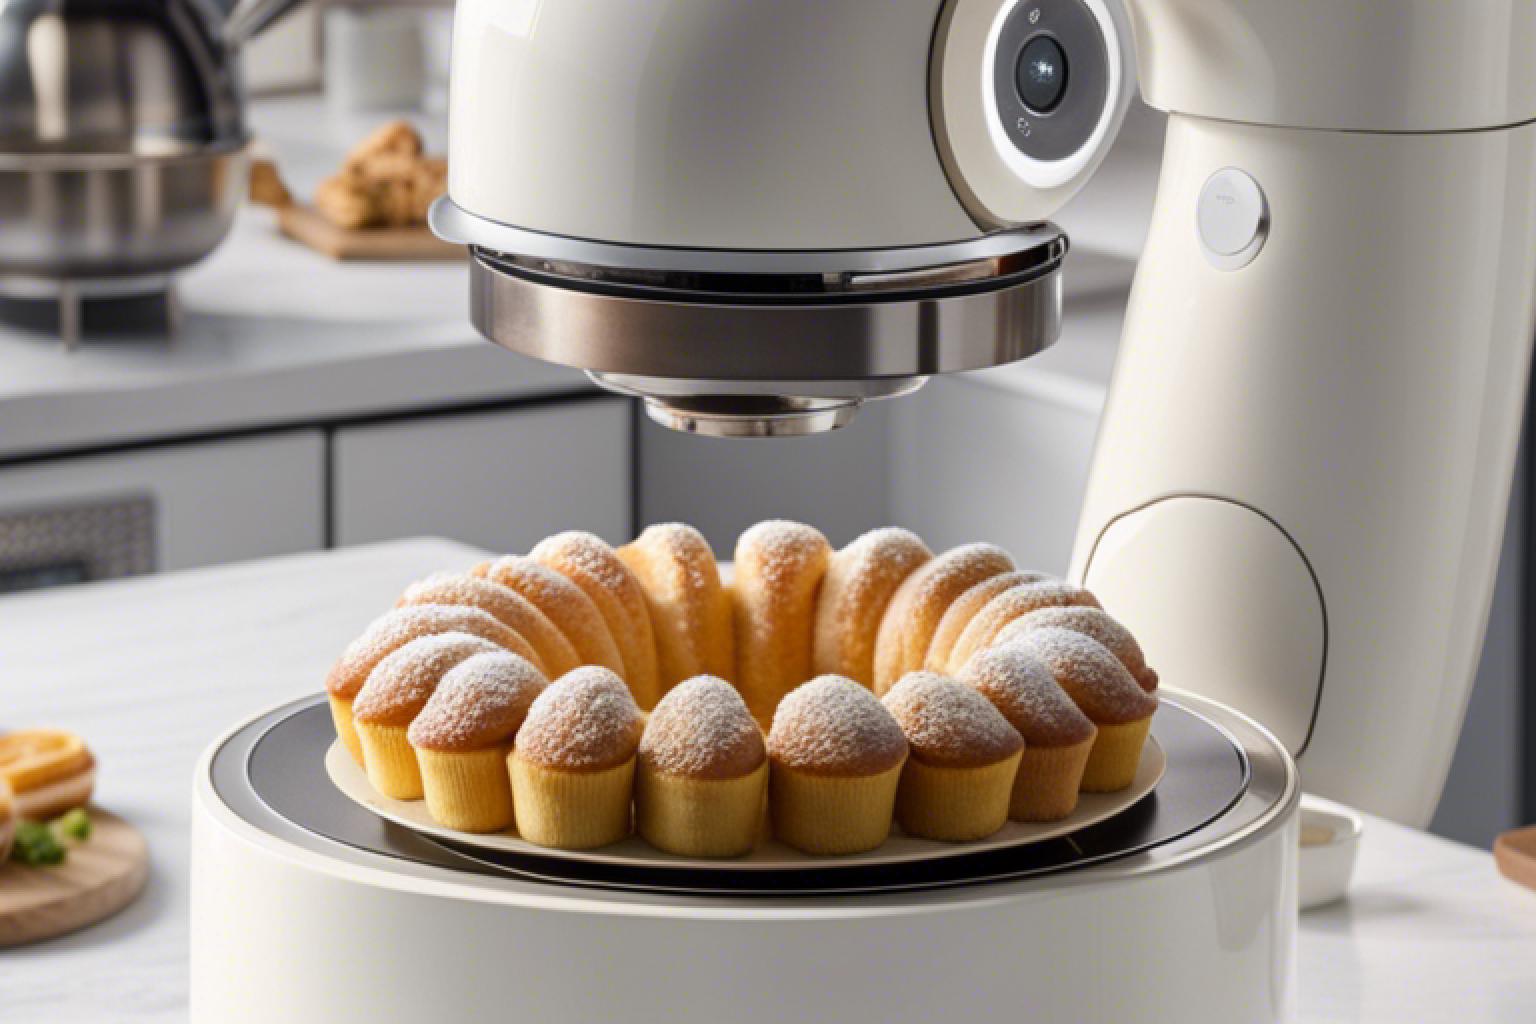 La révolution culinaire grâce au robot cuisine - INTELLIGENCE